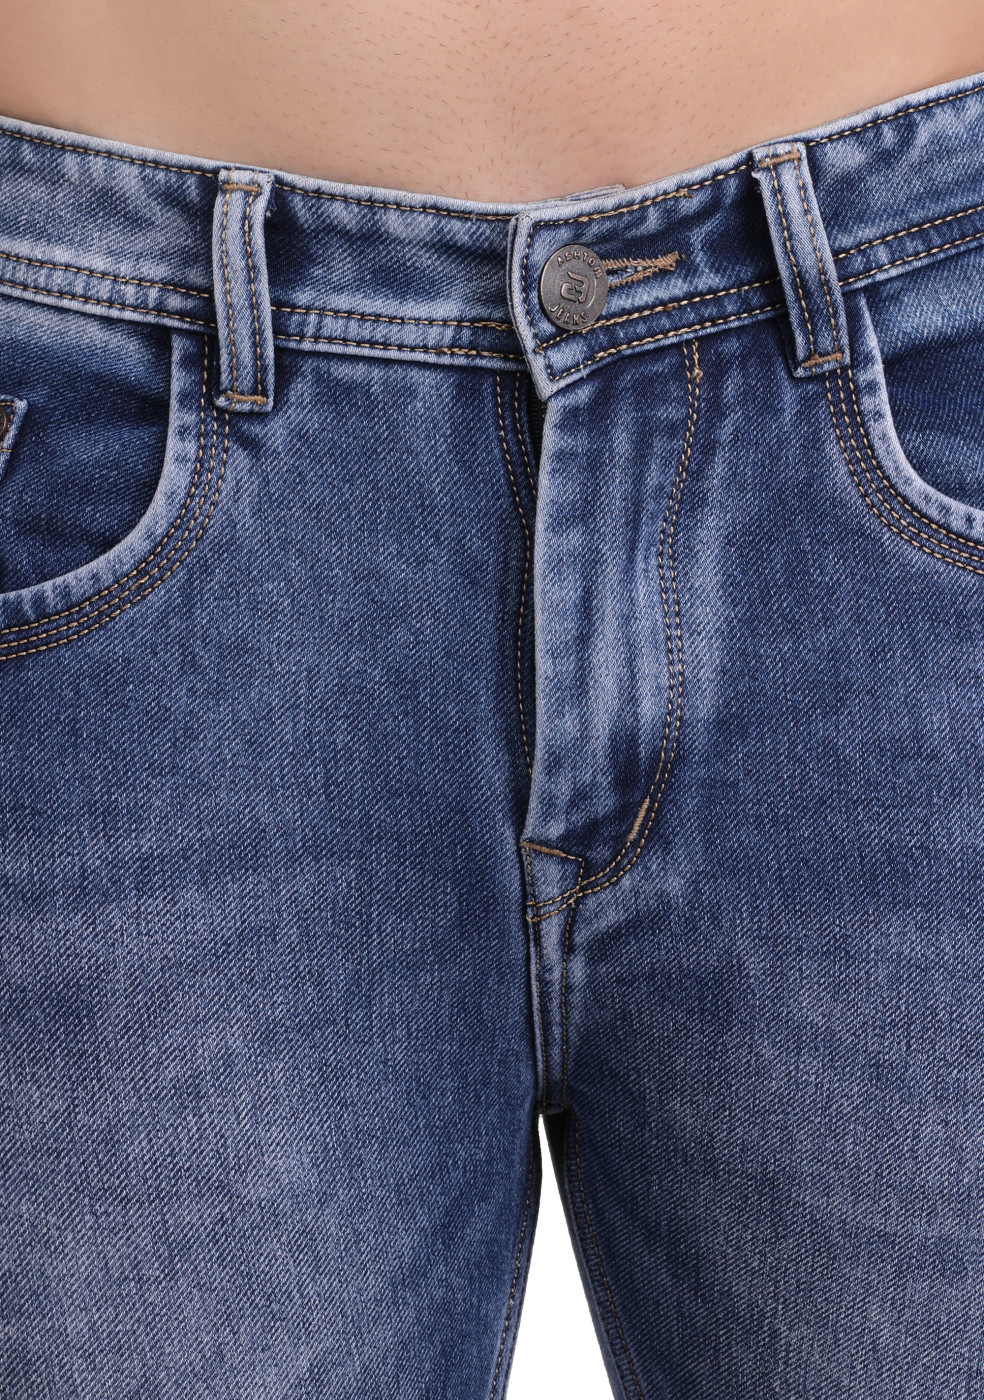 Blue Denim Jeans Slim Fit For Men